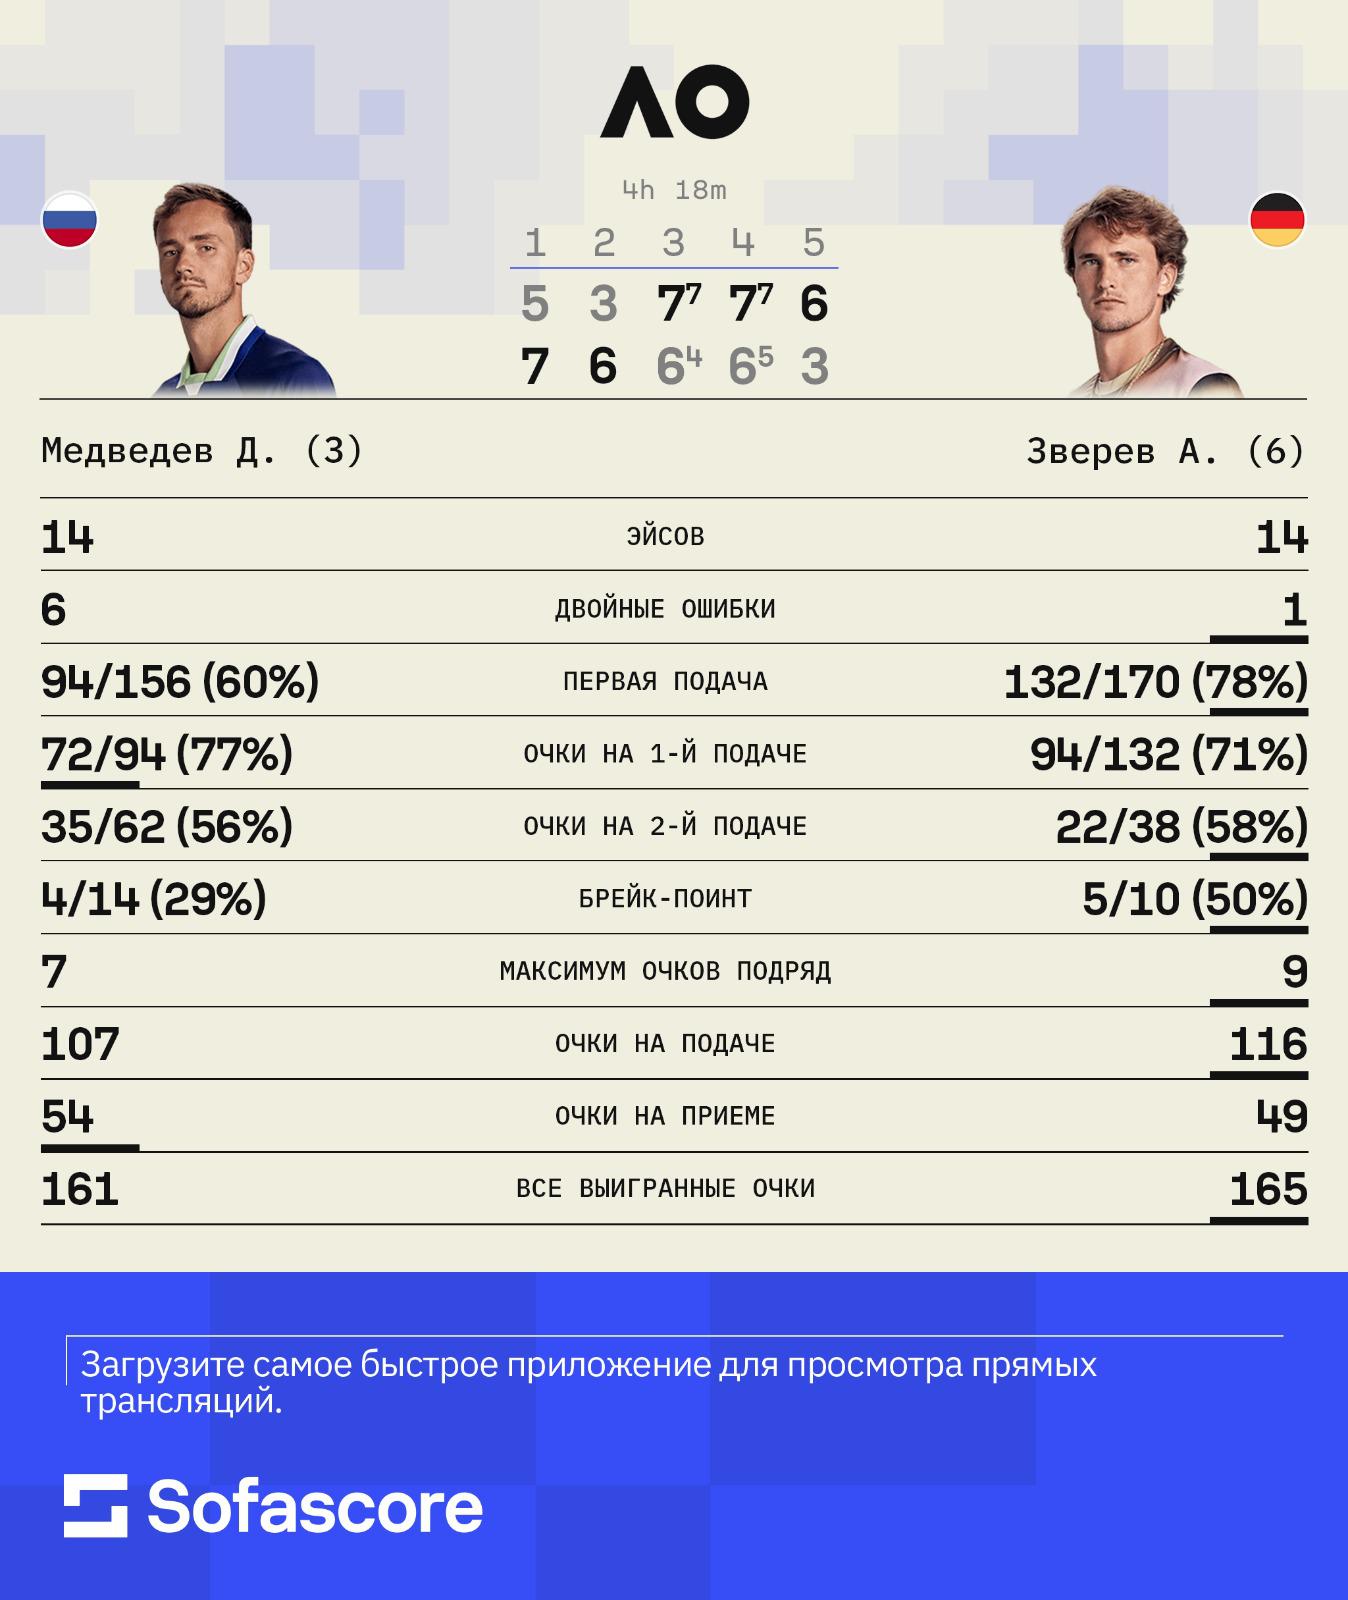 Даниил Медведев вышел в финал Australian Open, уступая по сетам 0:2